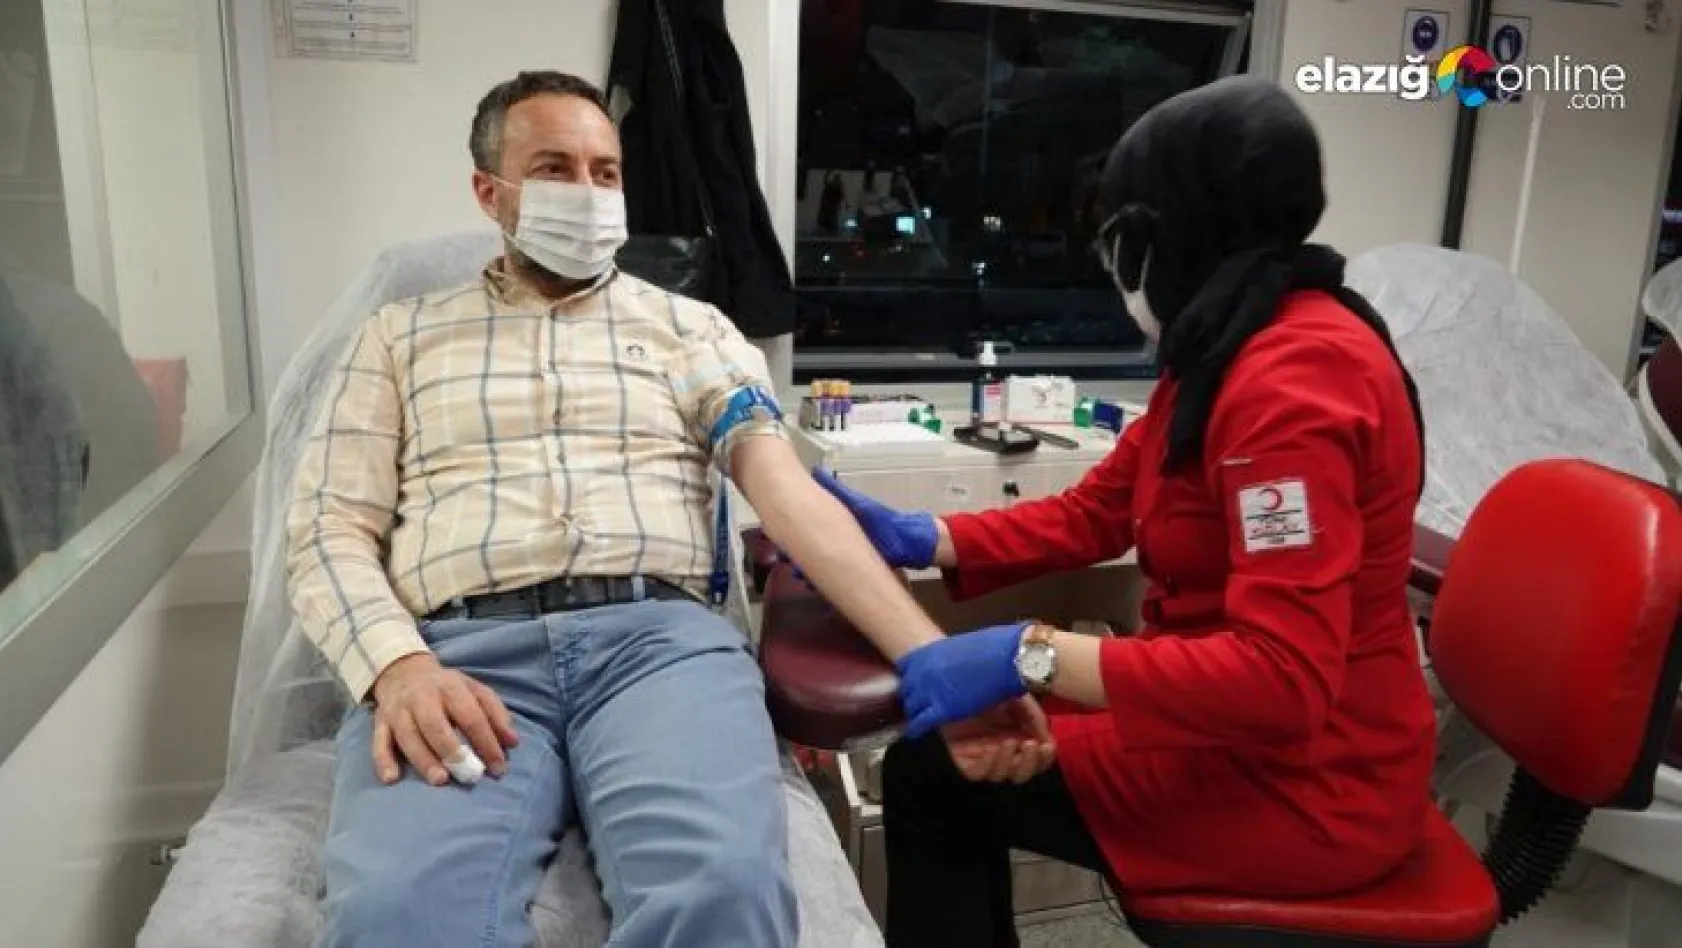 Elazığ'dan kan bağışı desteği sürüyor